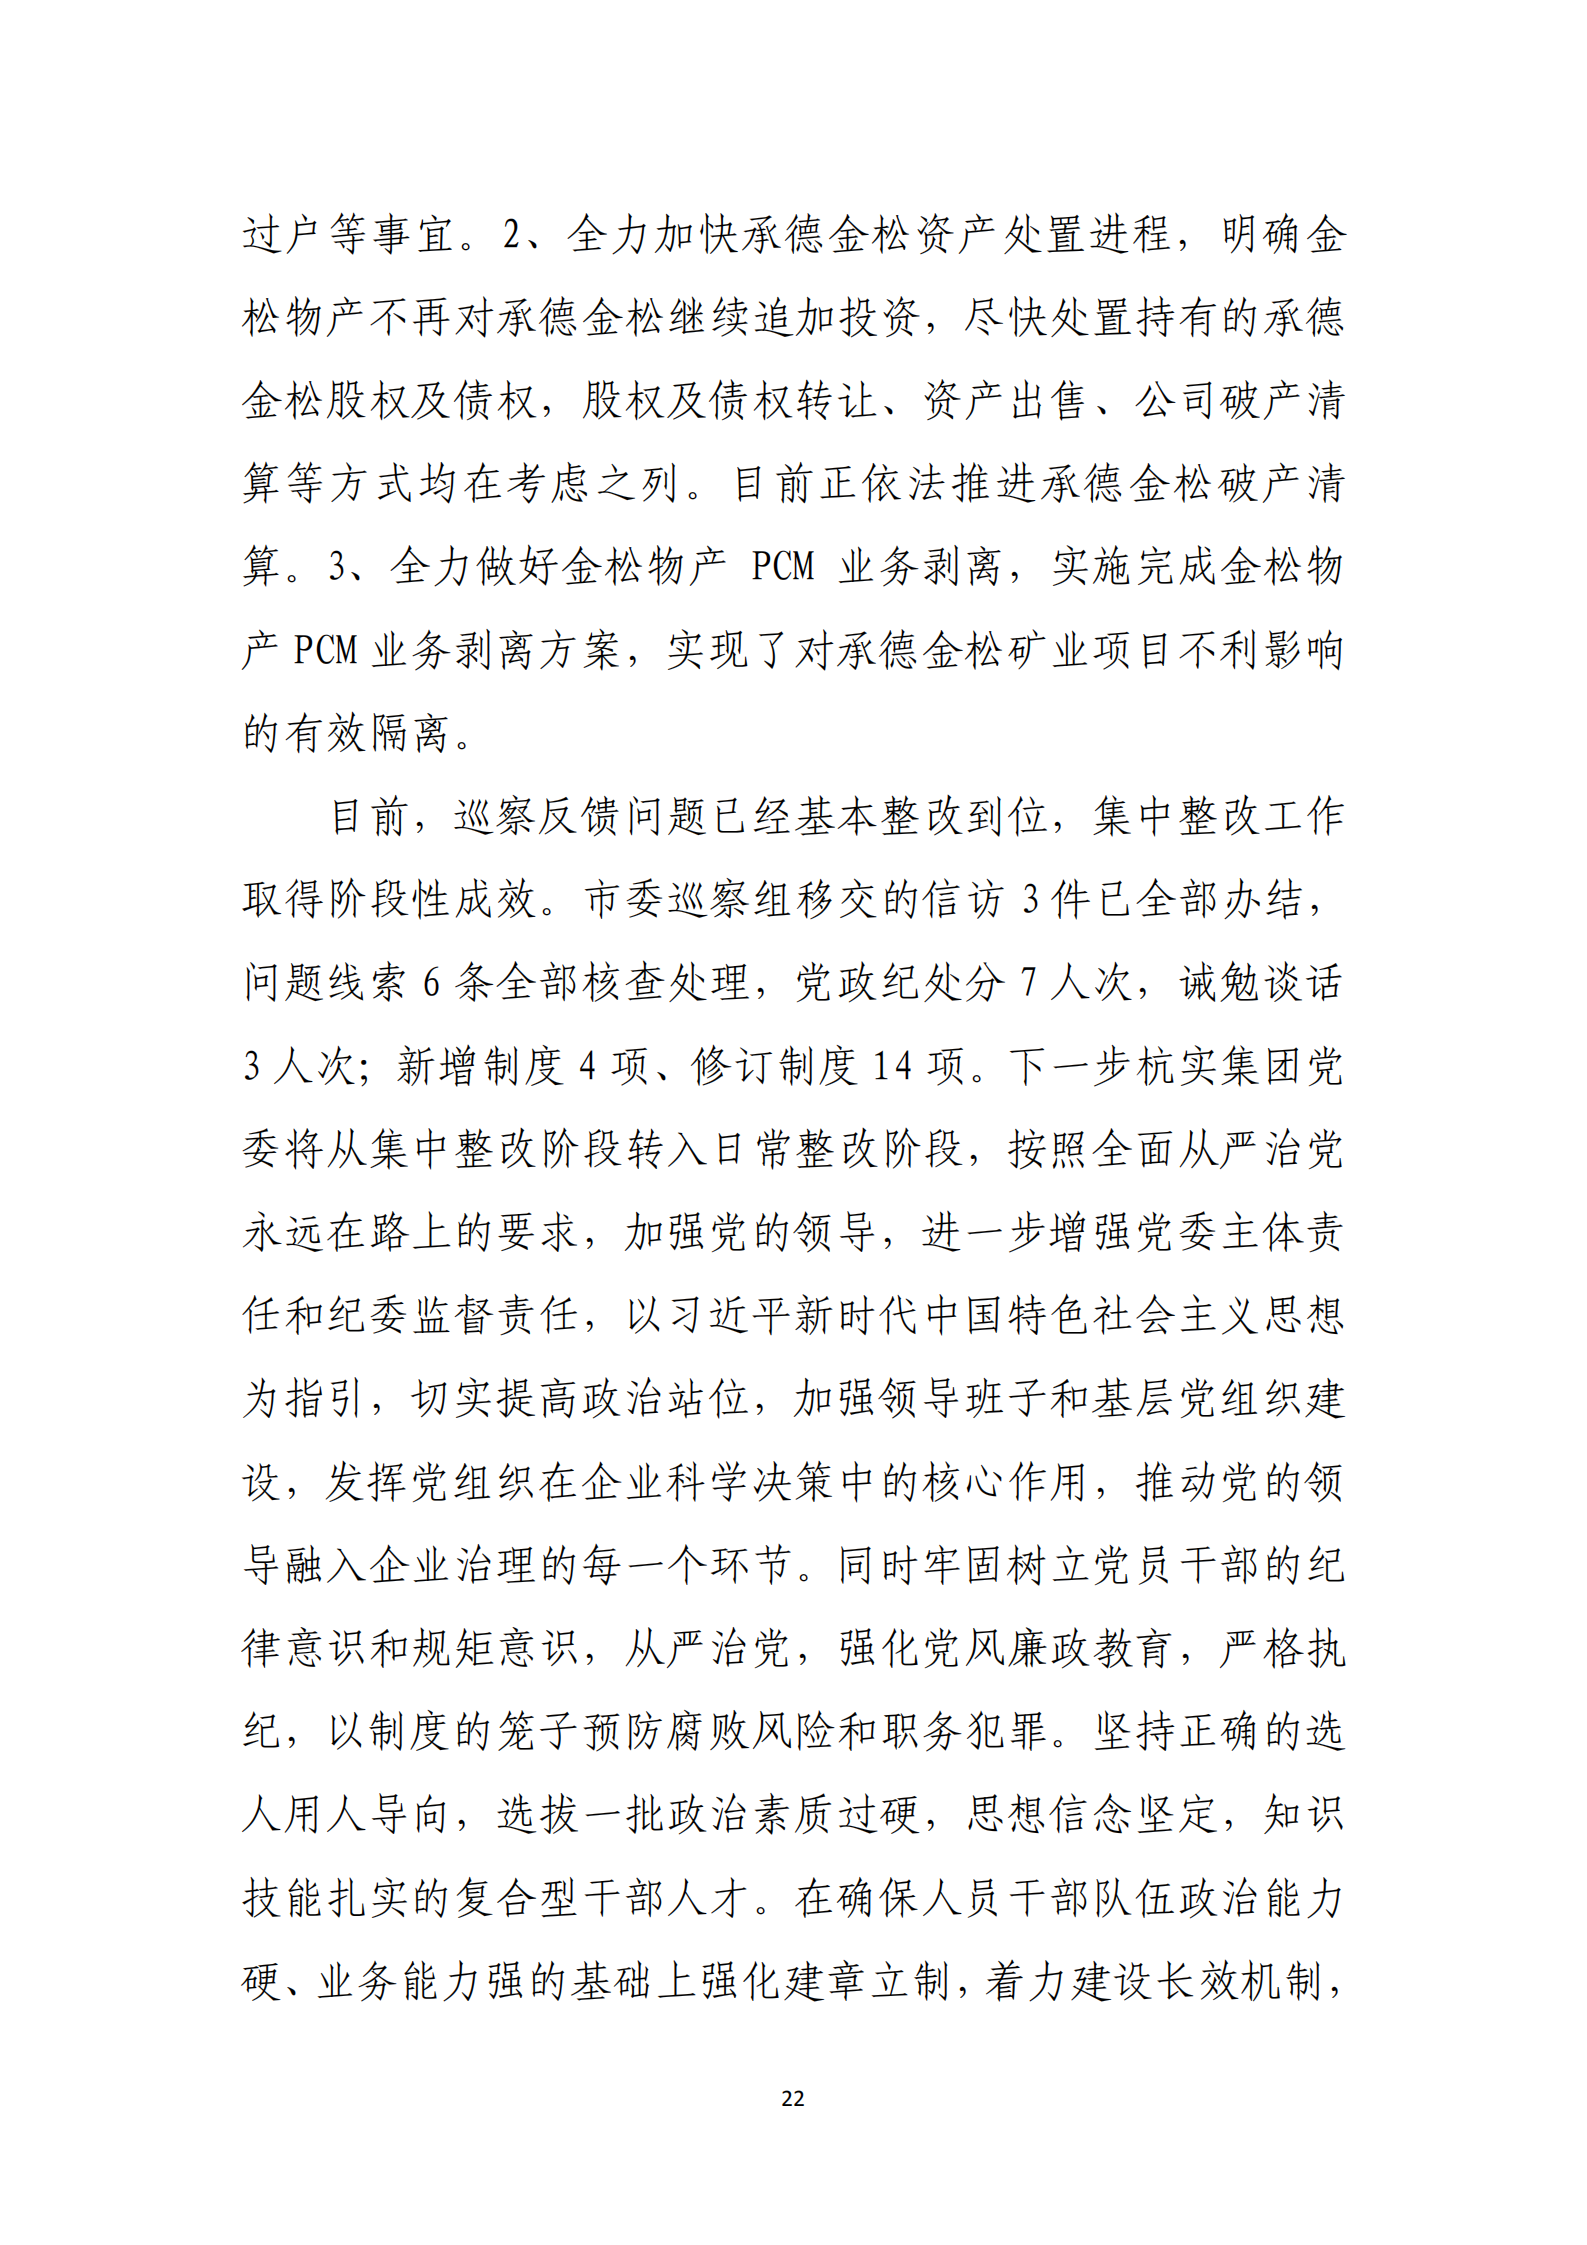 乐虎国际游戏官网党委关于巡察整改情况的通报_21.png